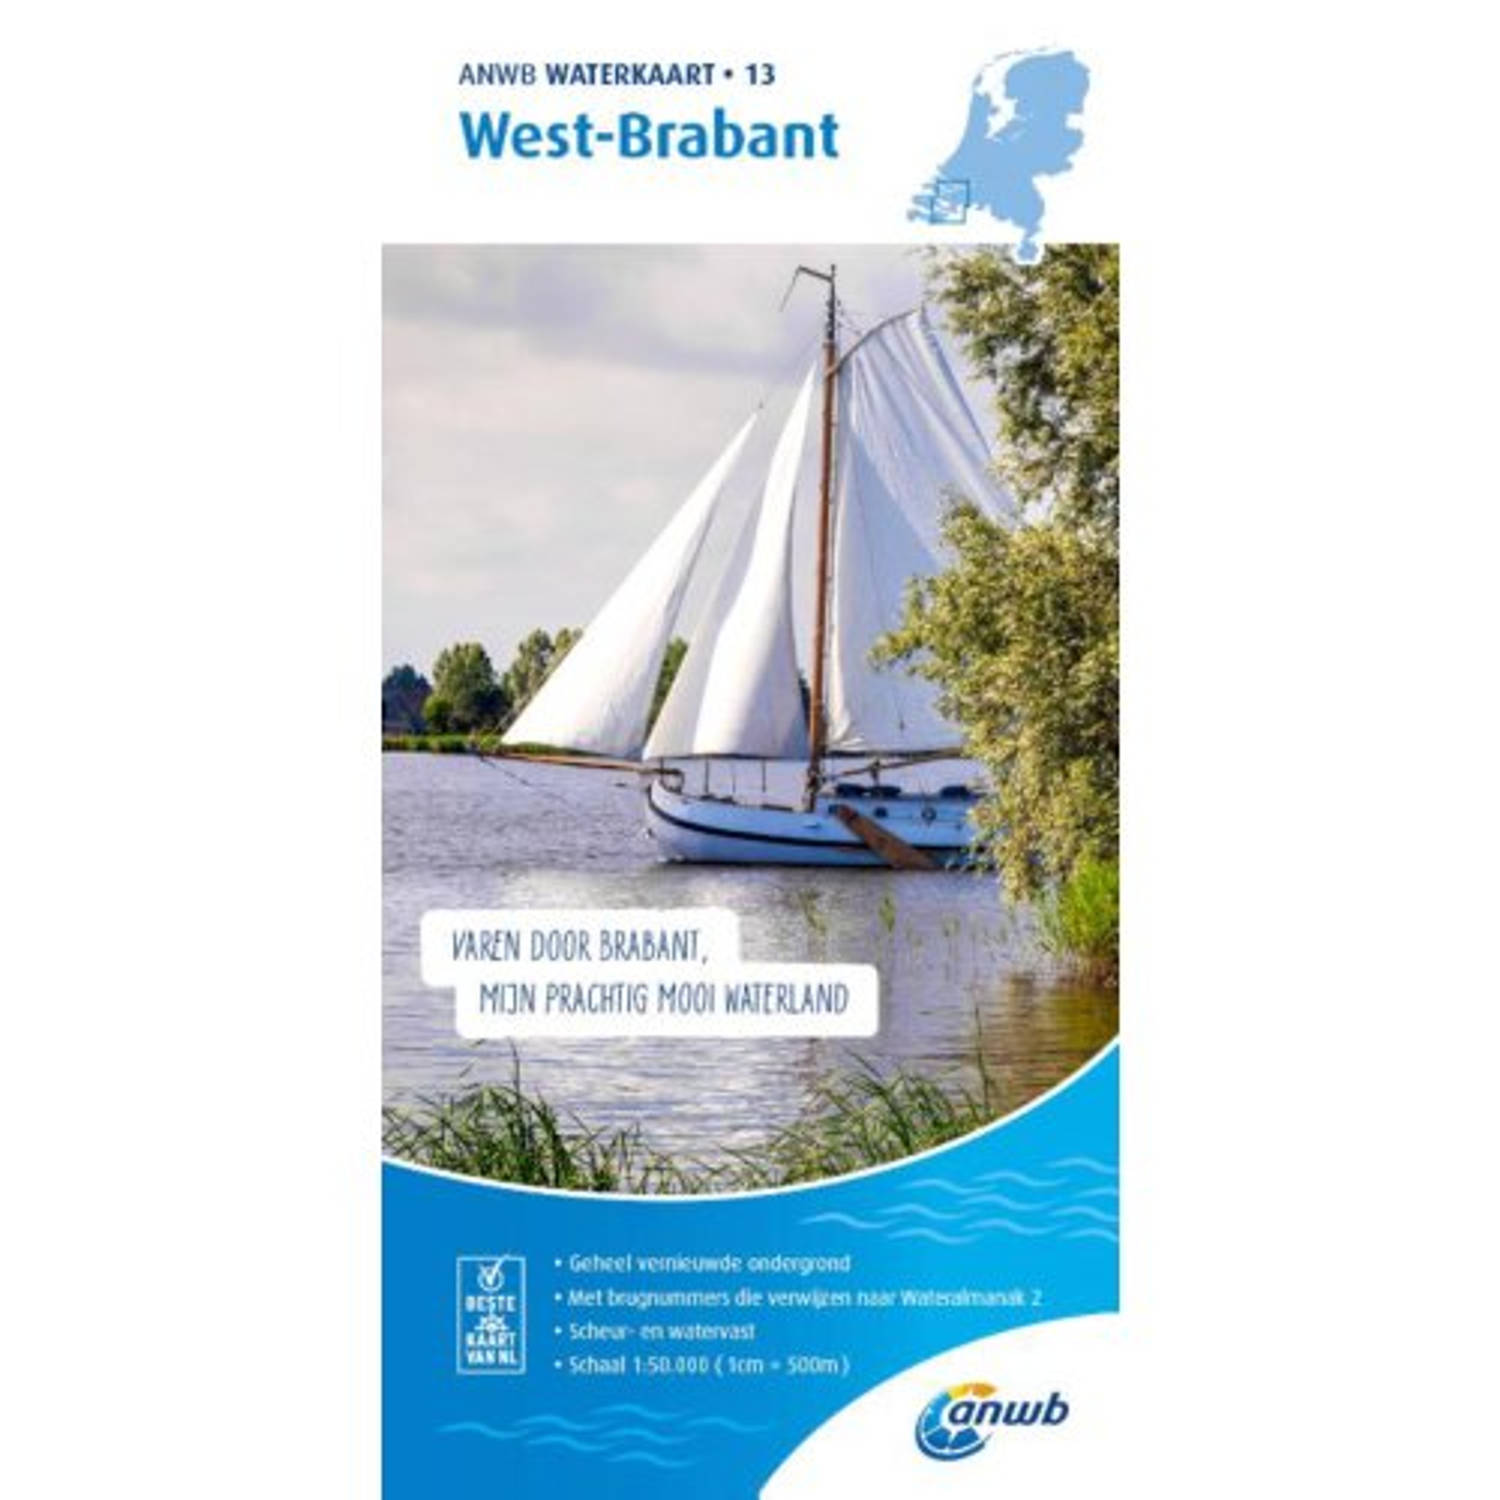 Waterkaart 13. West-brabant - Anwb Waterkaart